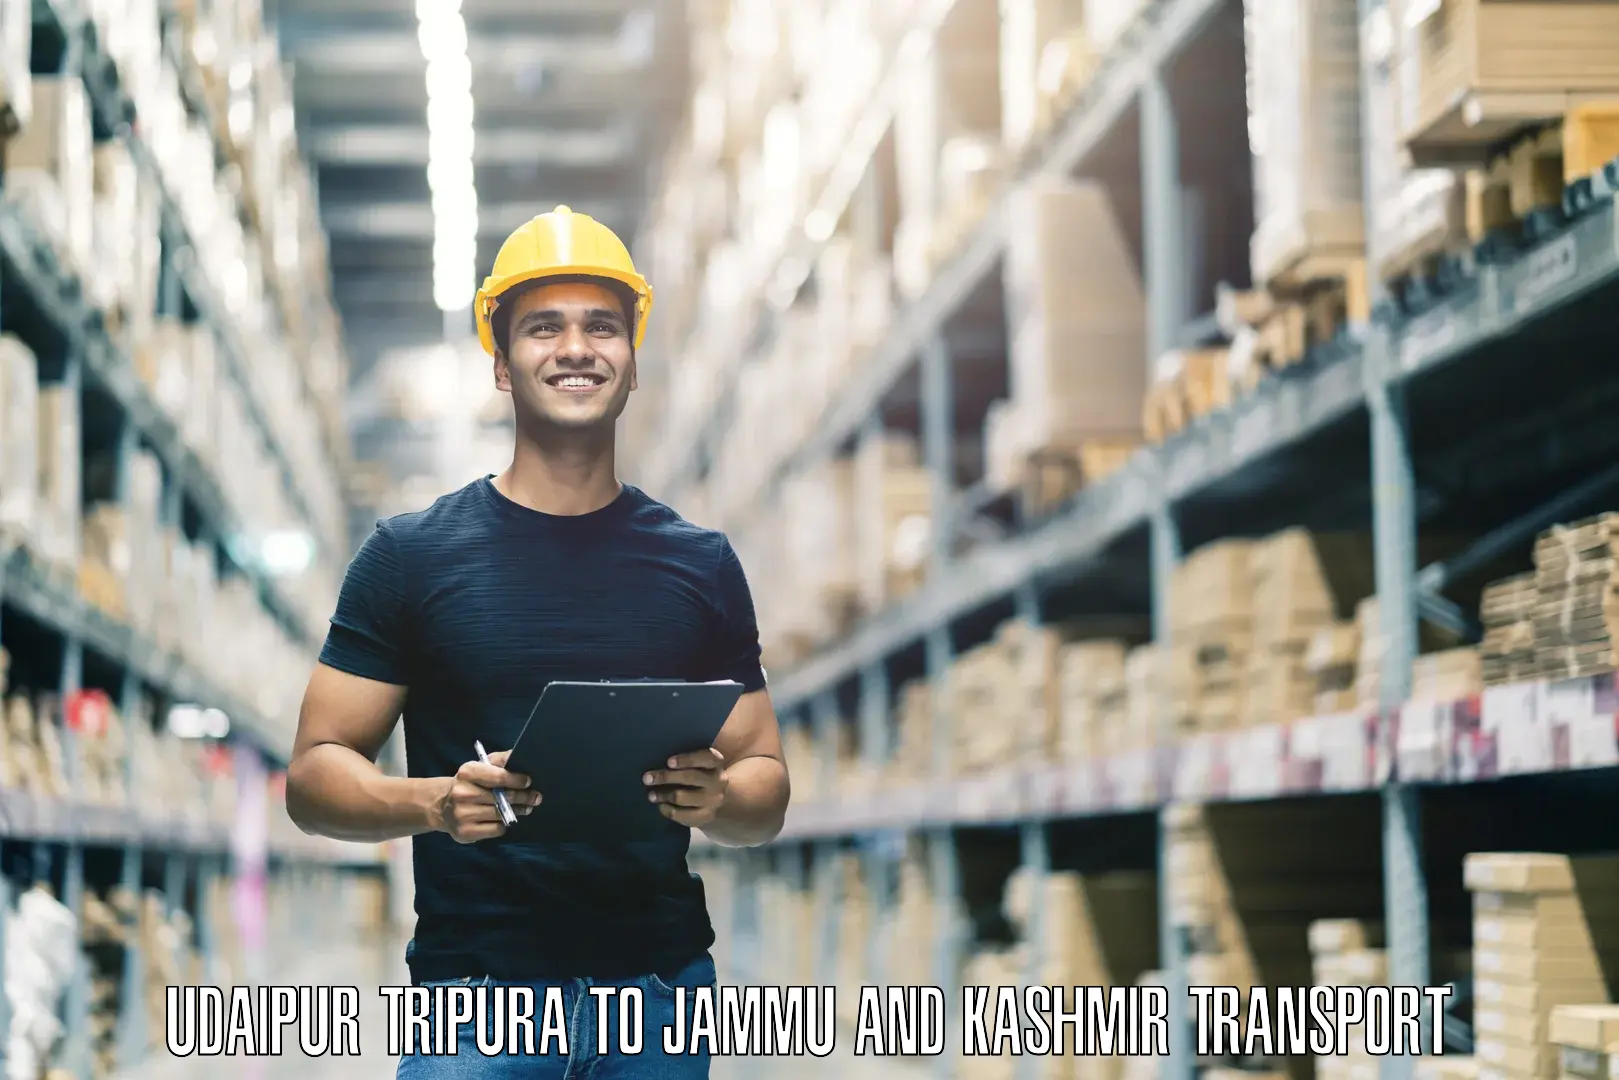 Goods delivery service Udaipur Tripura to Kishtwar